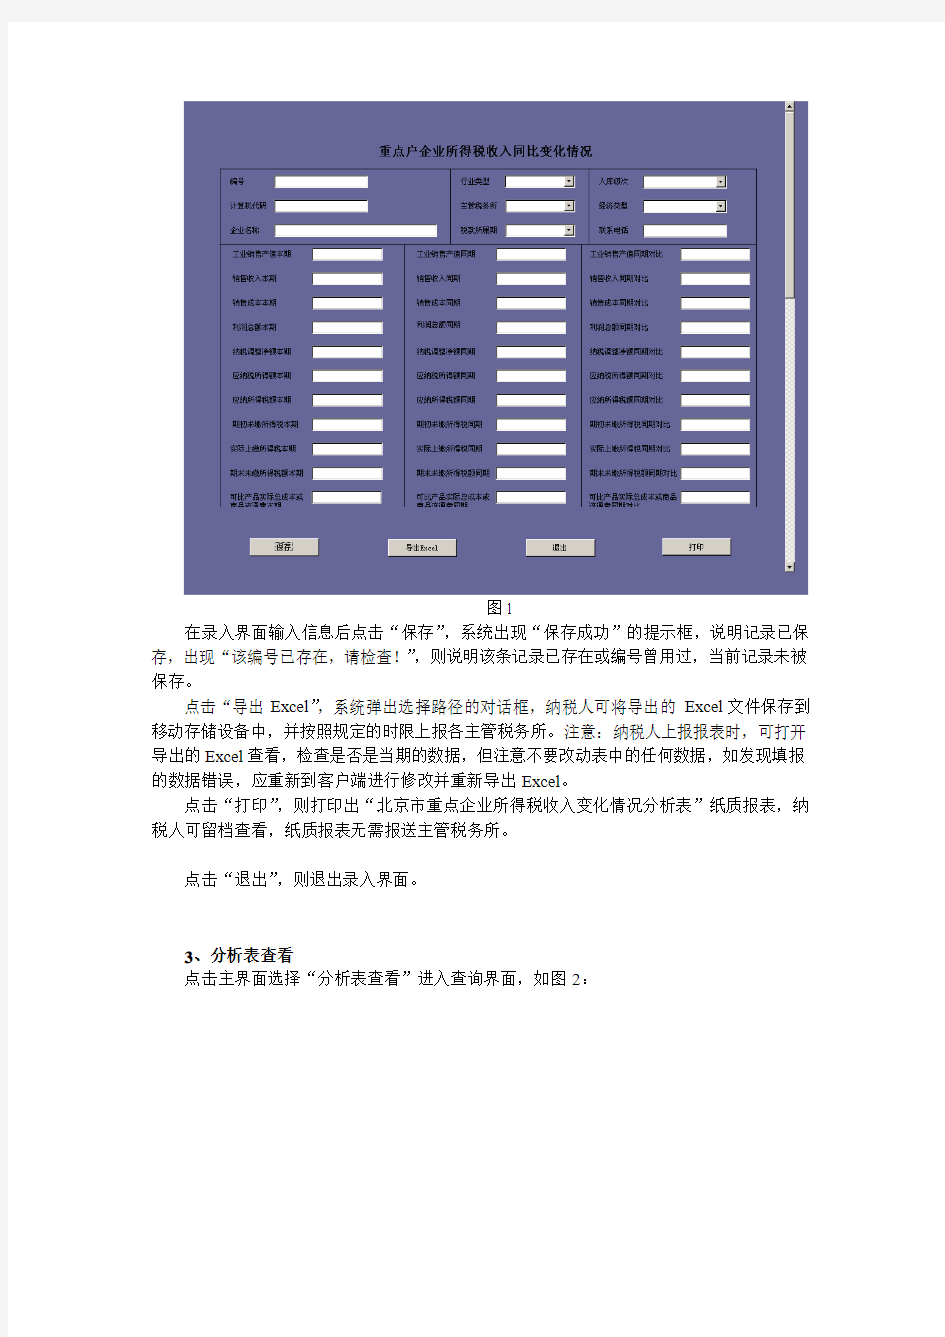 北京市重点企业所得税收入变化情况分析表(客户端)操作手册